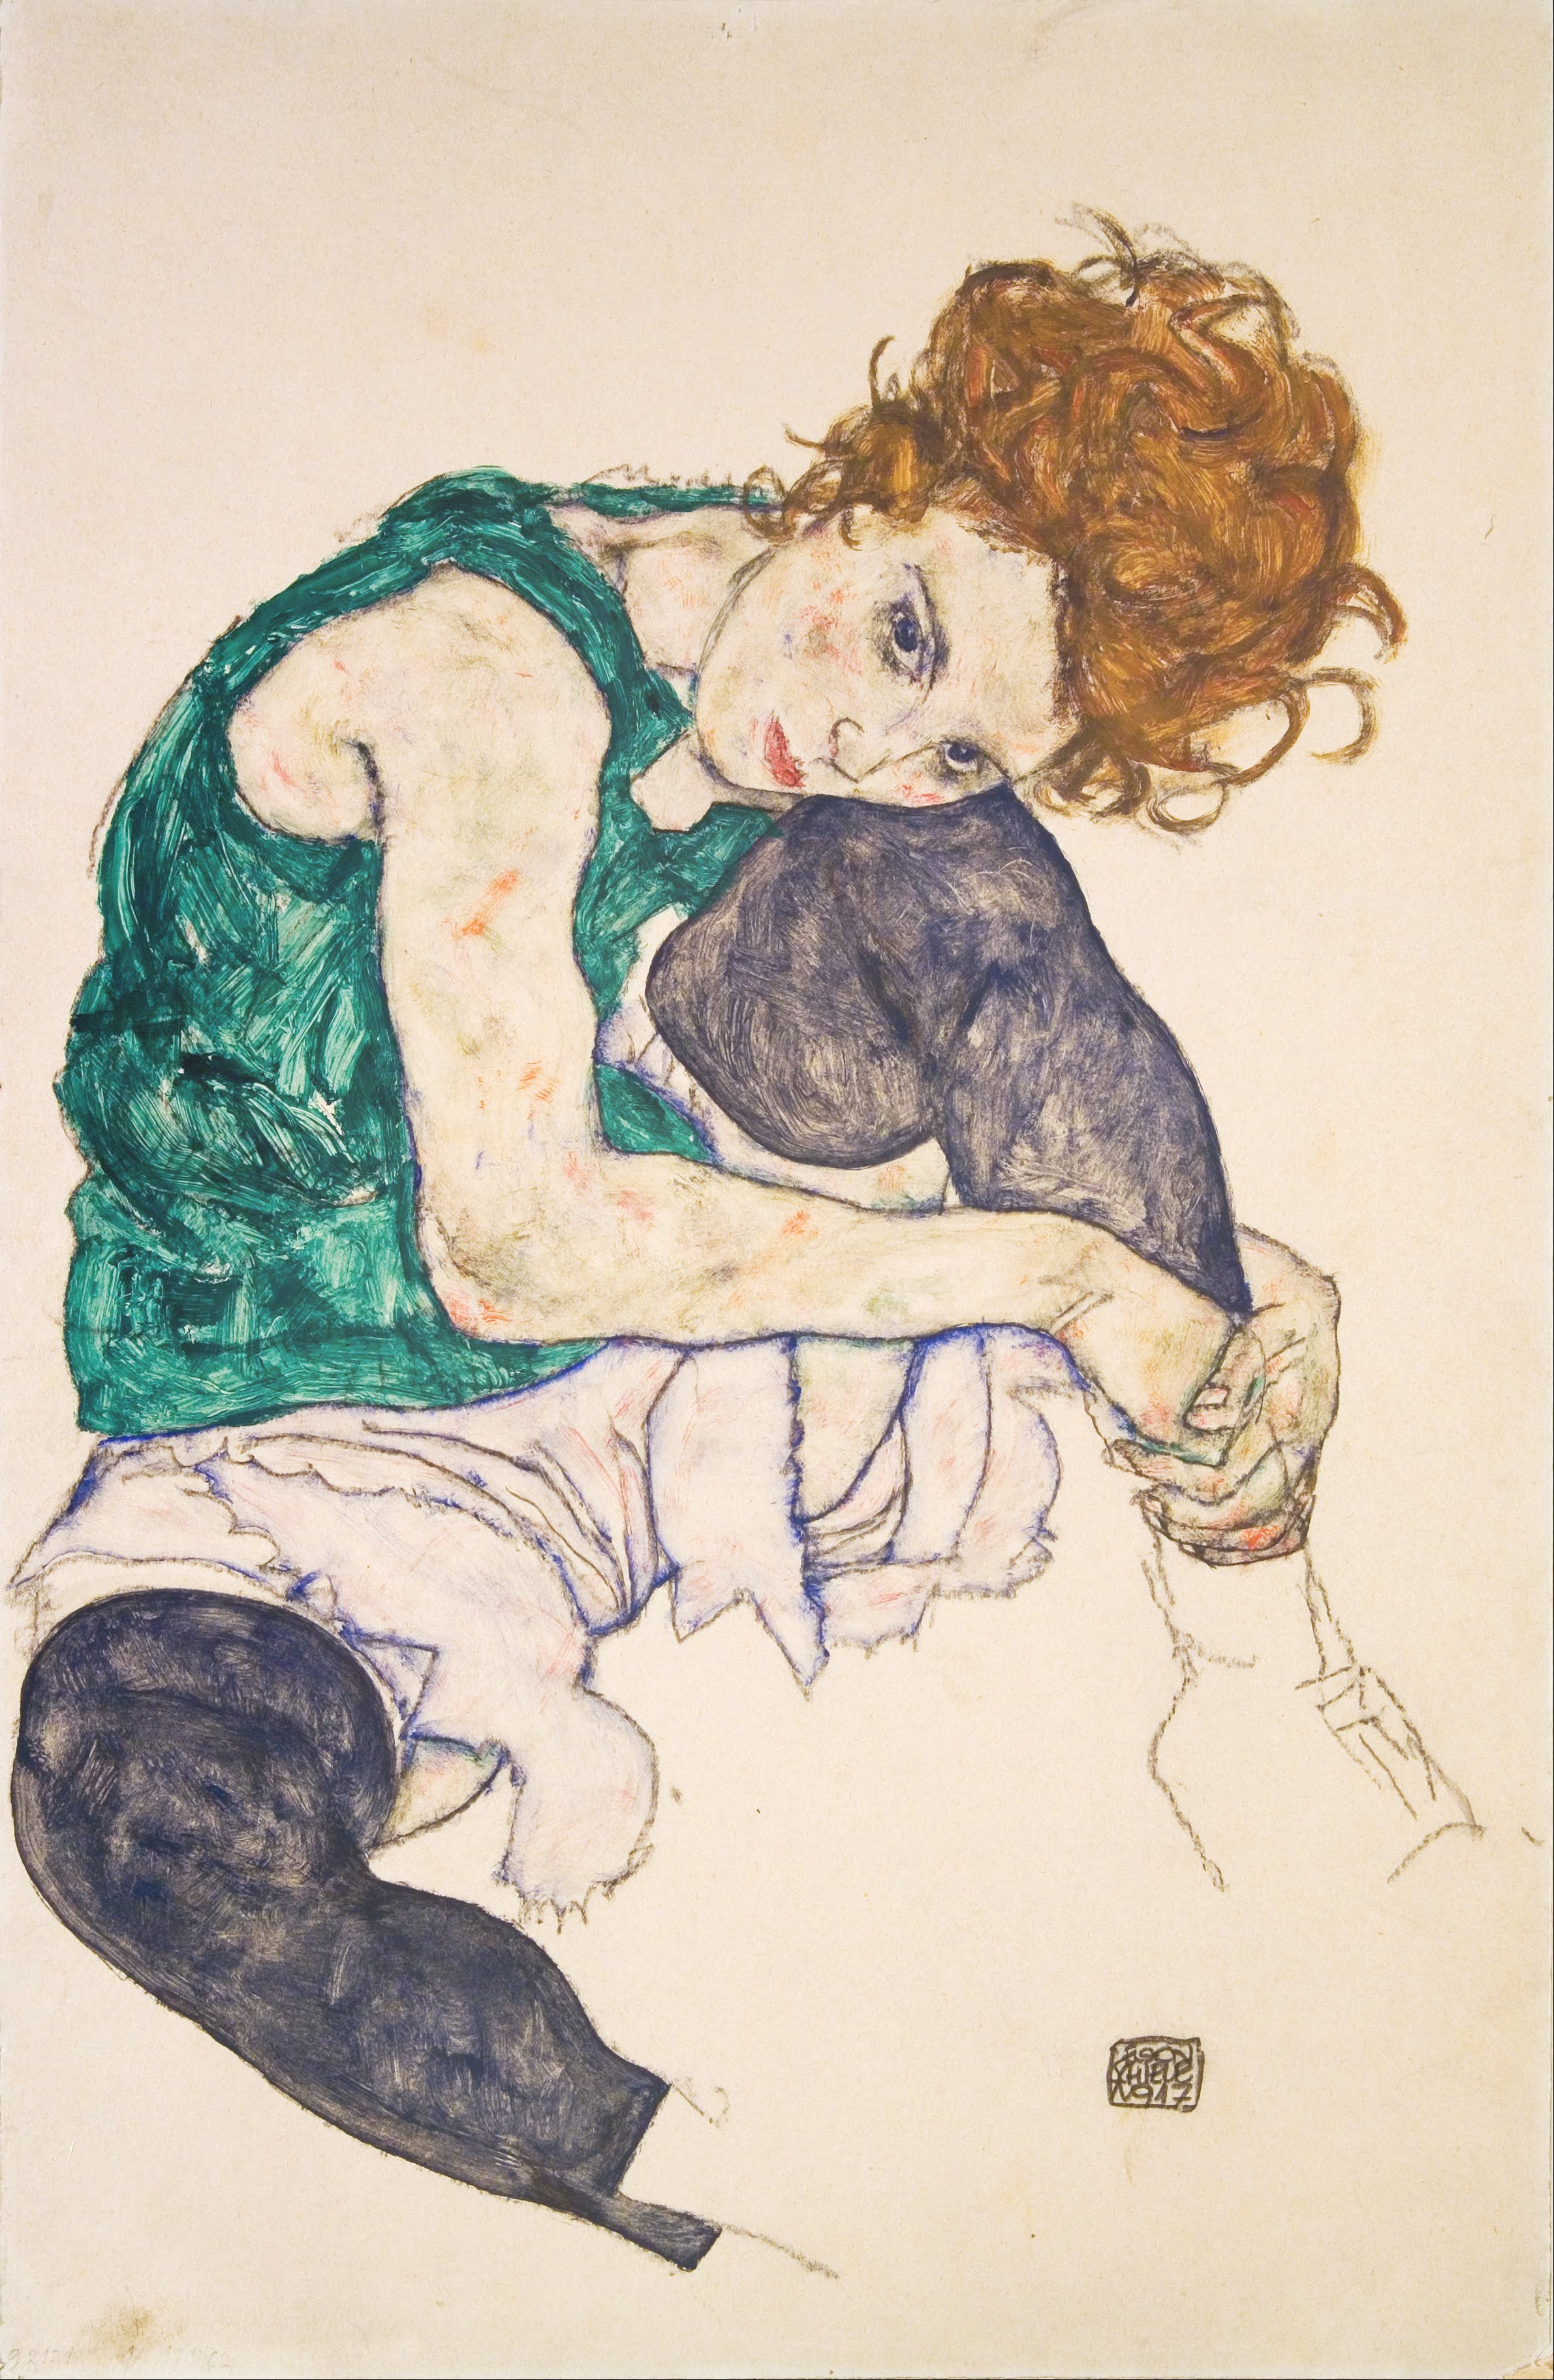 Сидящая женщина с согнутым коленом by Egon Schiele - 1917 - 46 x 30.5 см 